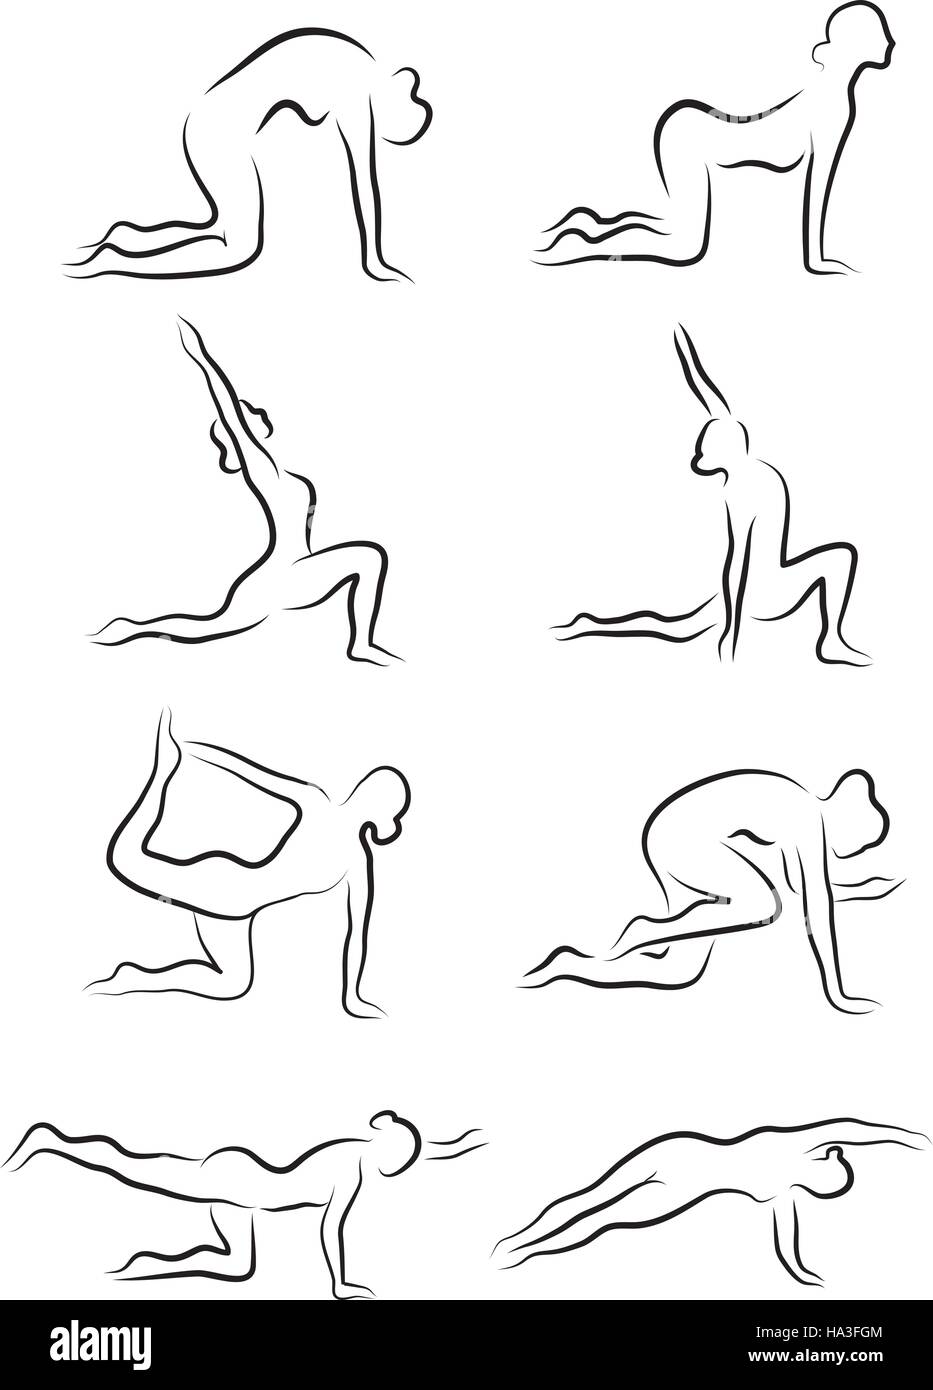 Reihe von Skizzen von Silhouetten von Yoga-Asanas. Das Mädchen beschäftigt sich mit Yoga. Vektor-illustration Stock Vektor